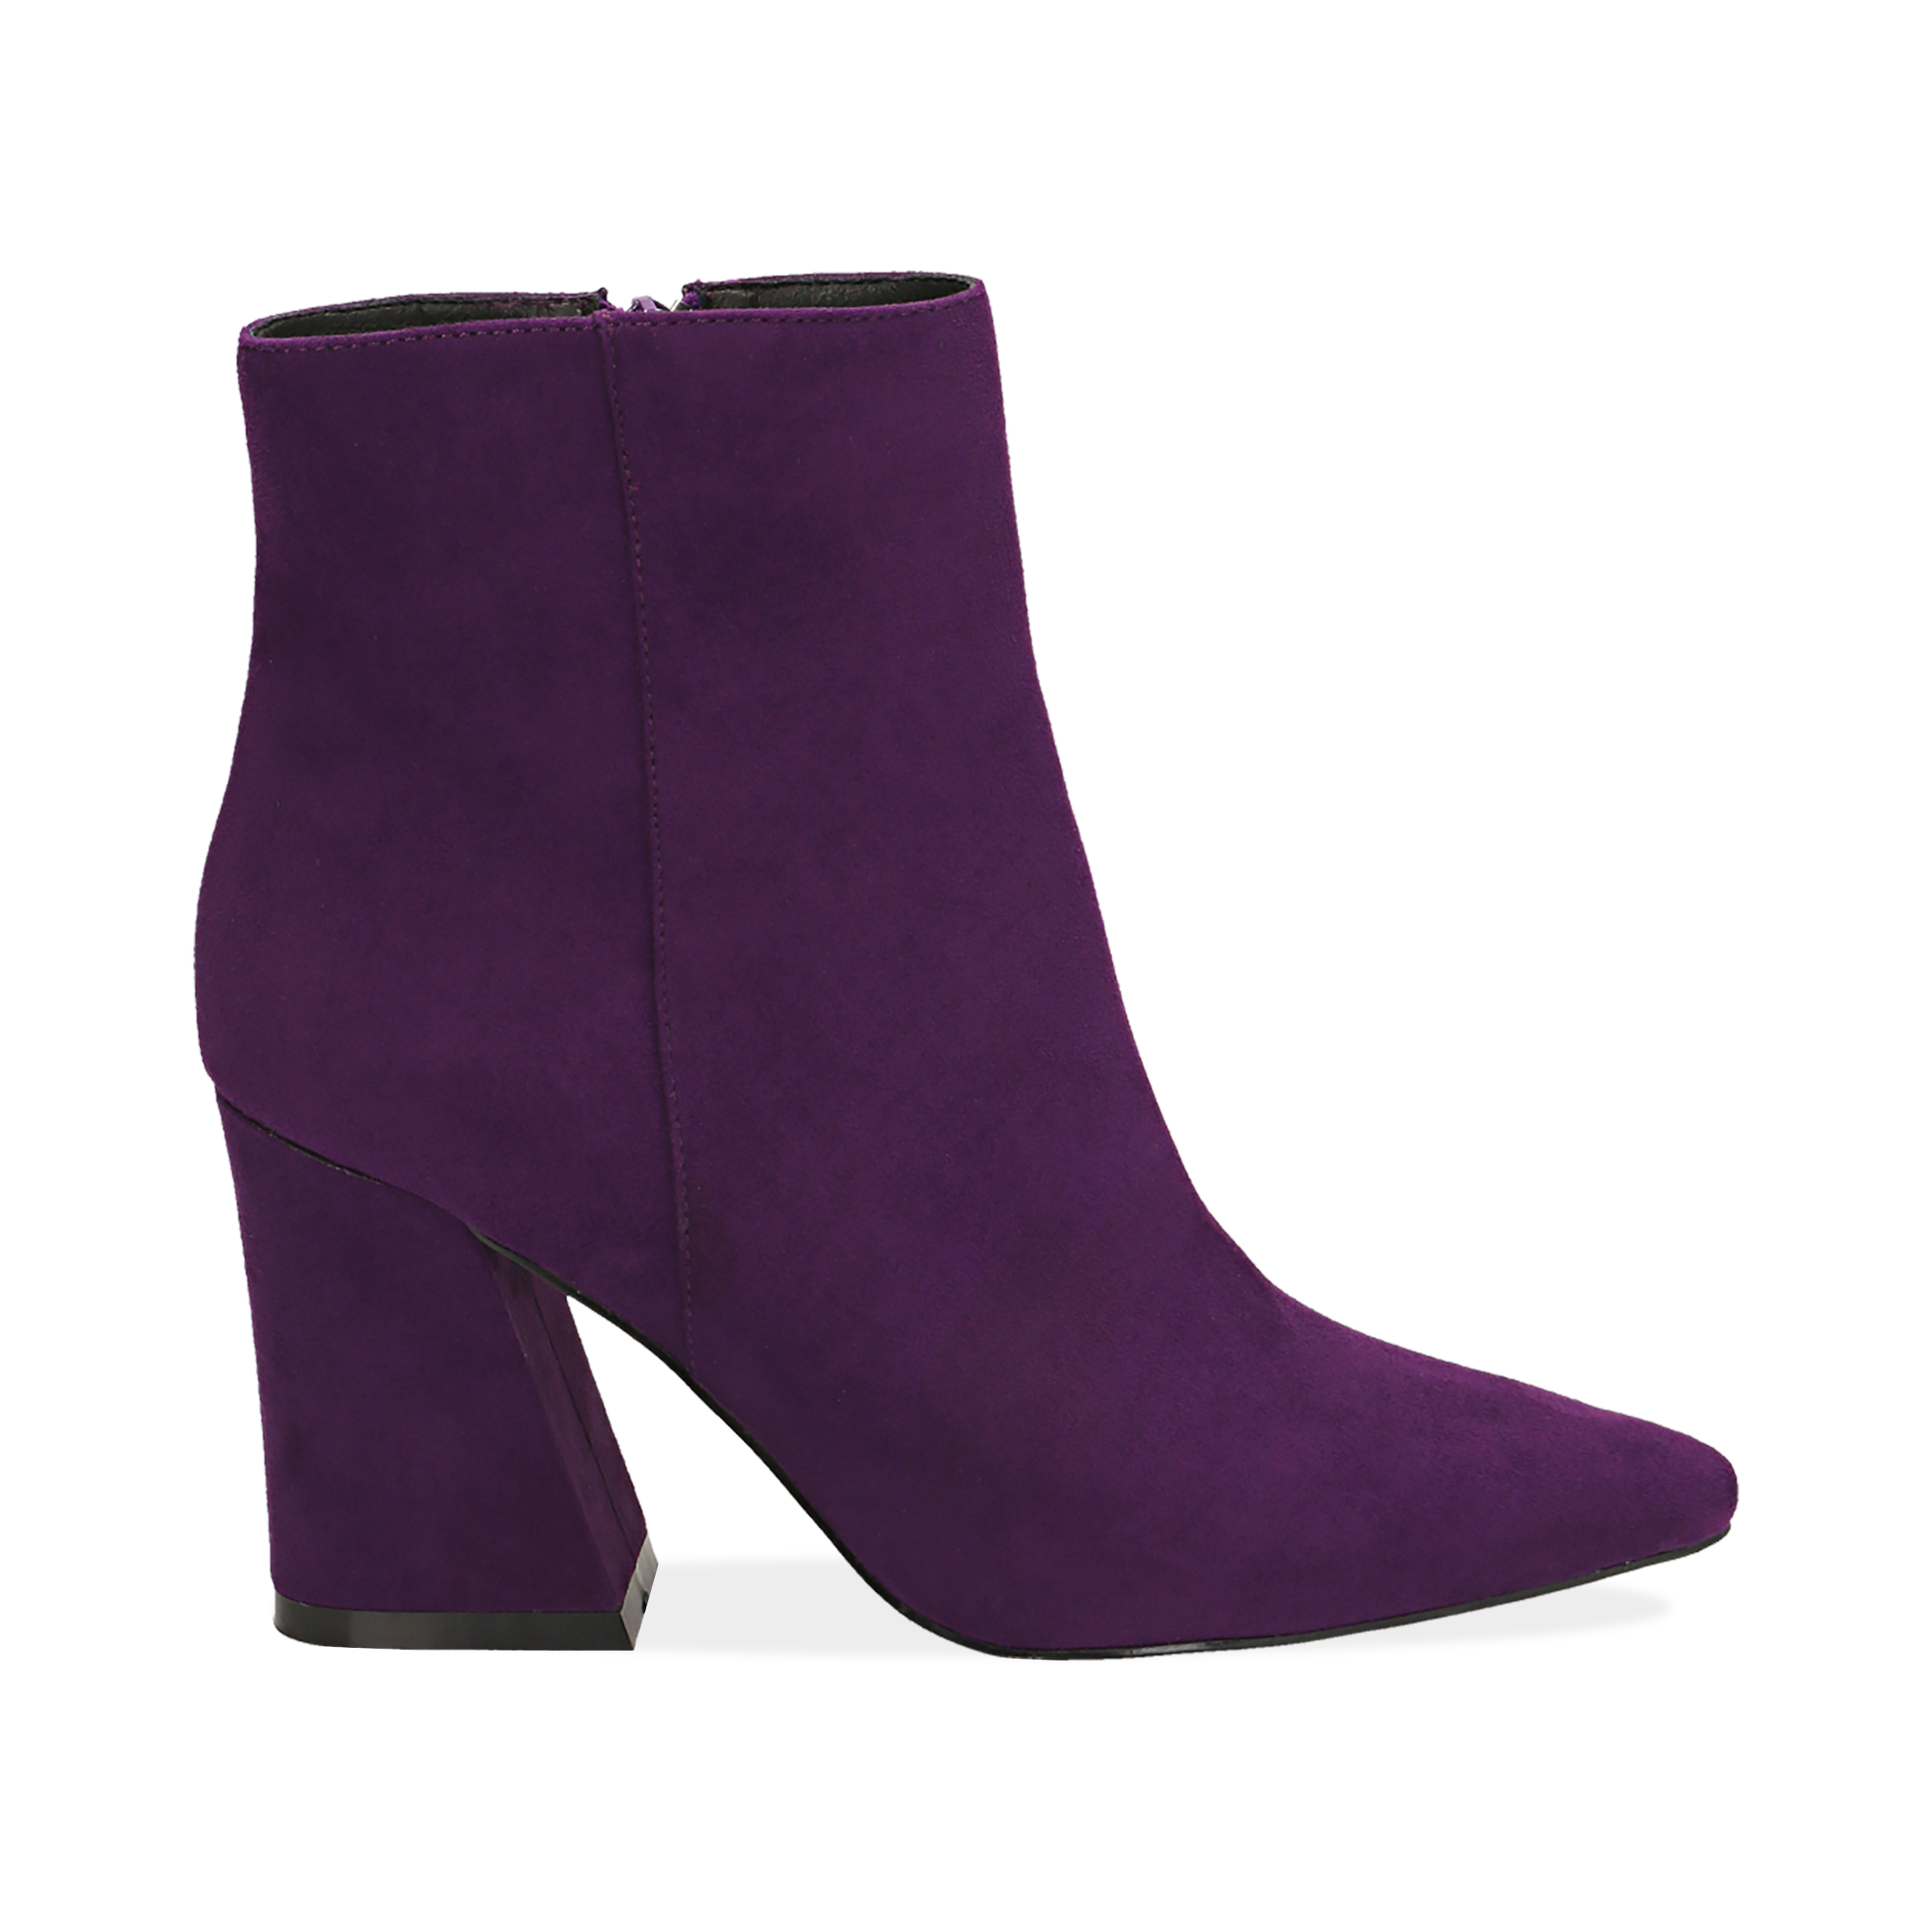 Ankle boots viola, tacco trapezio 8,5 cm | Primadonna Collection